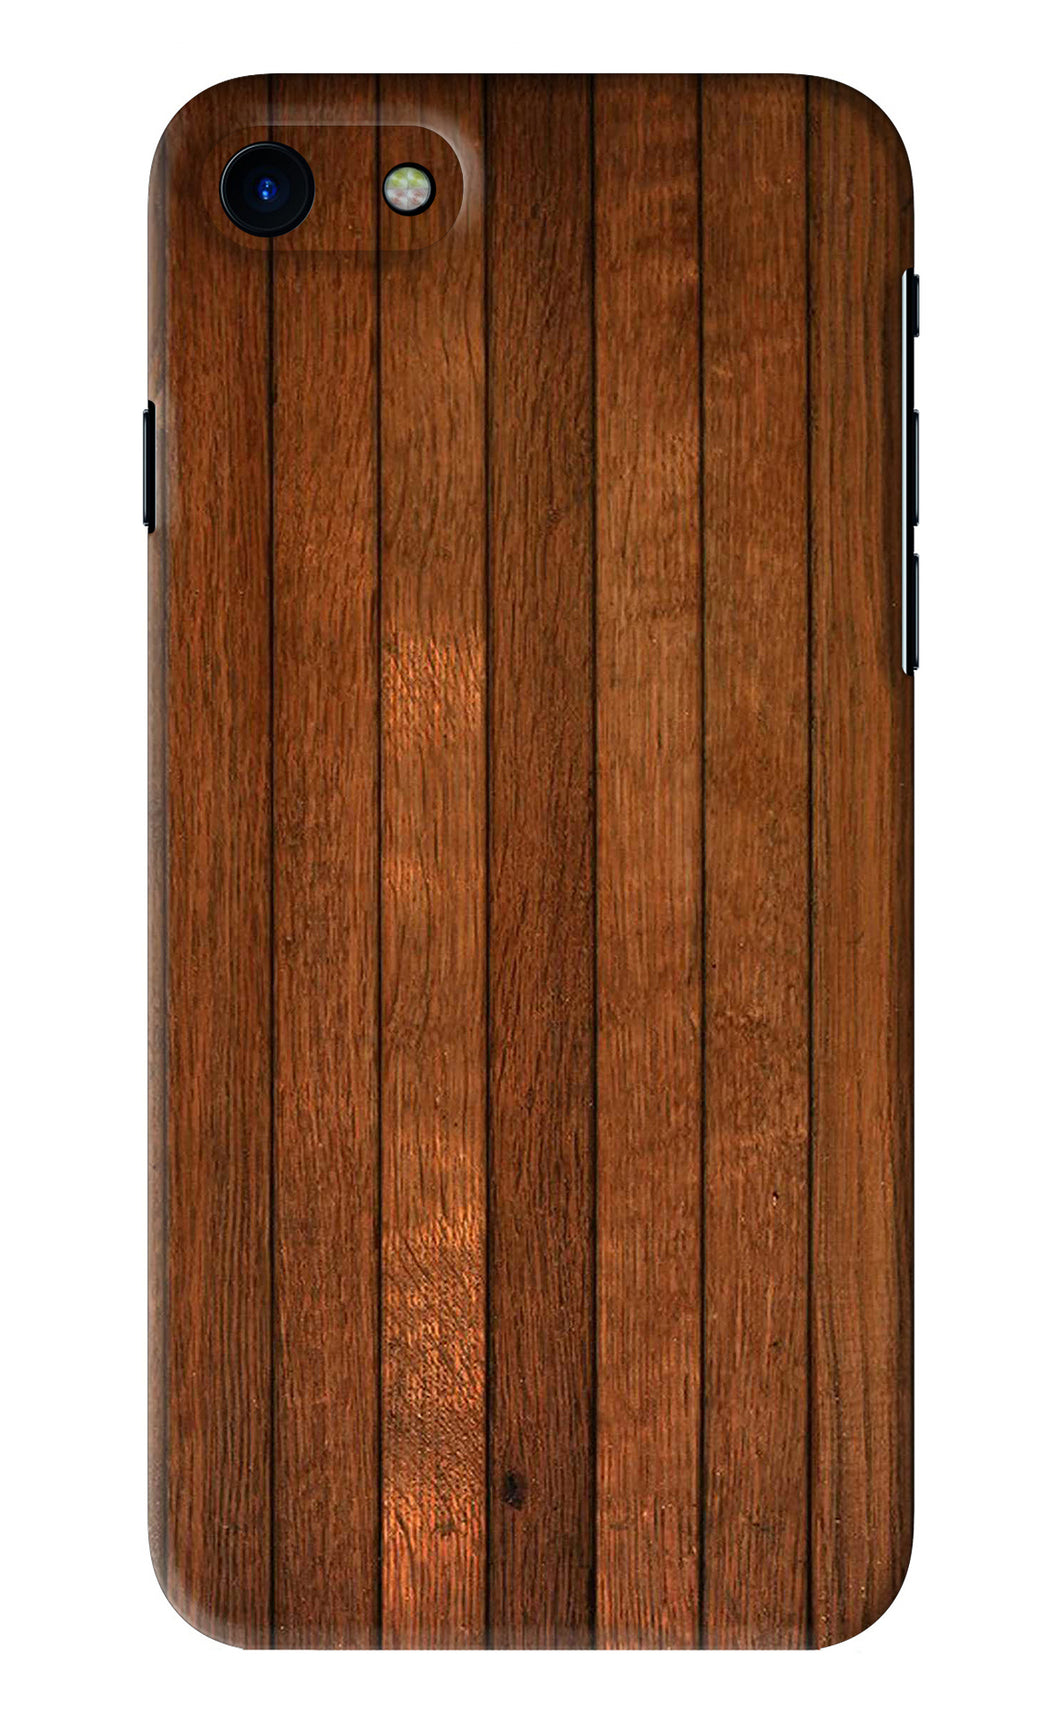 Wooden Artwork Bands iPhone SE 2020 Back Skin Wrap